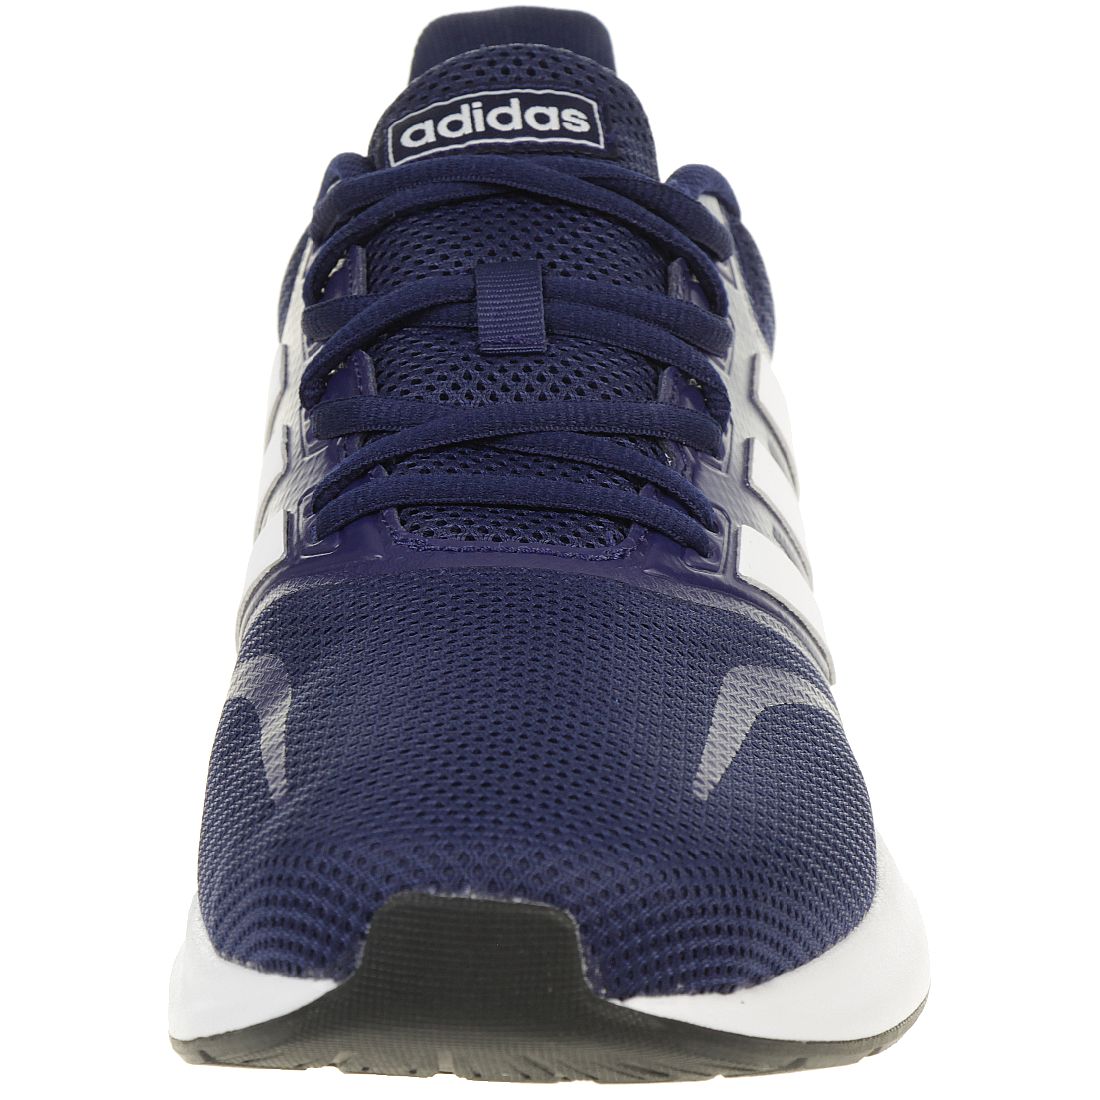 Adidas RUNFALCON Herren Laufschuh Sportschuh Fitnessschuh Jogging Running blau